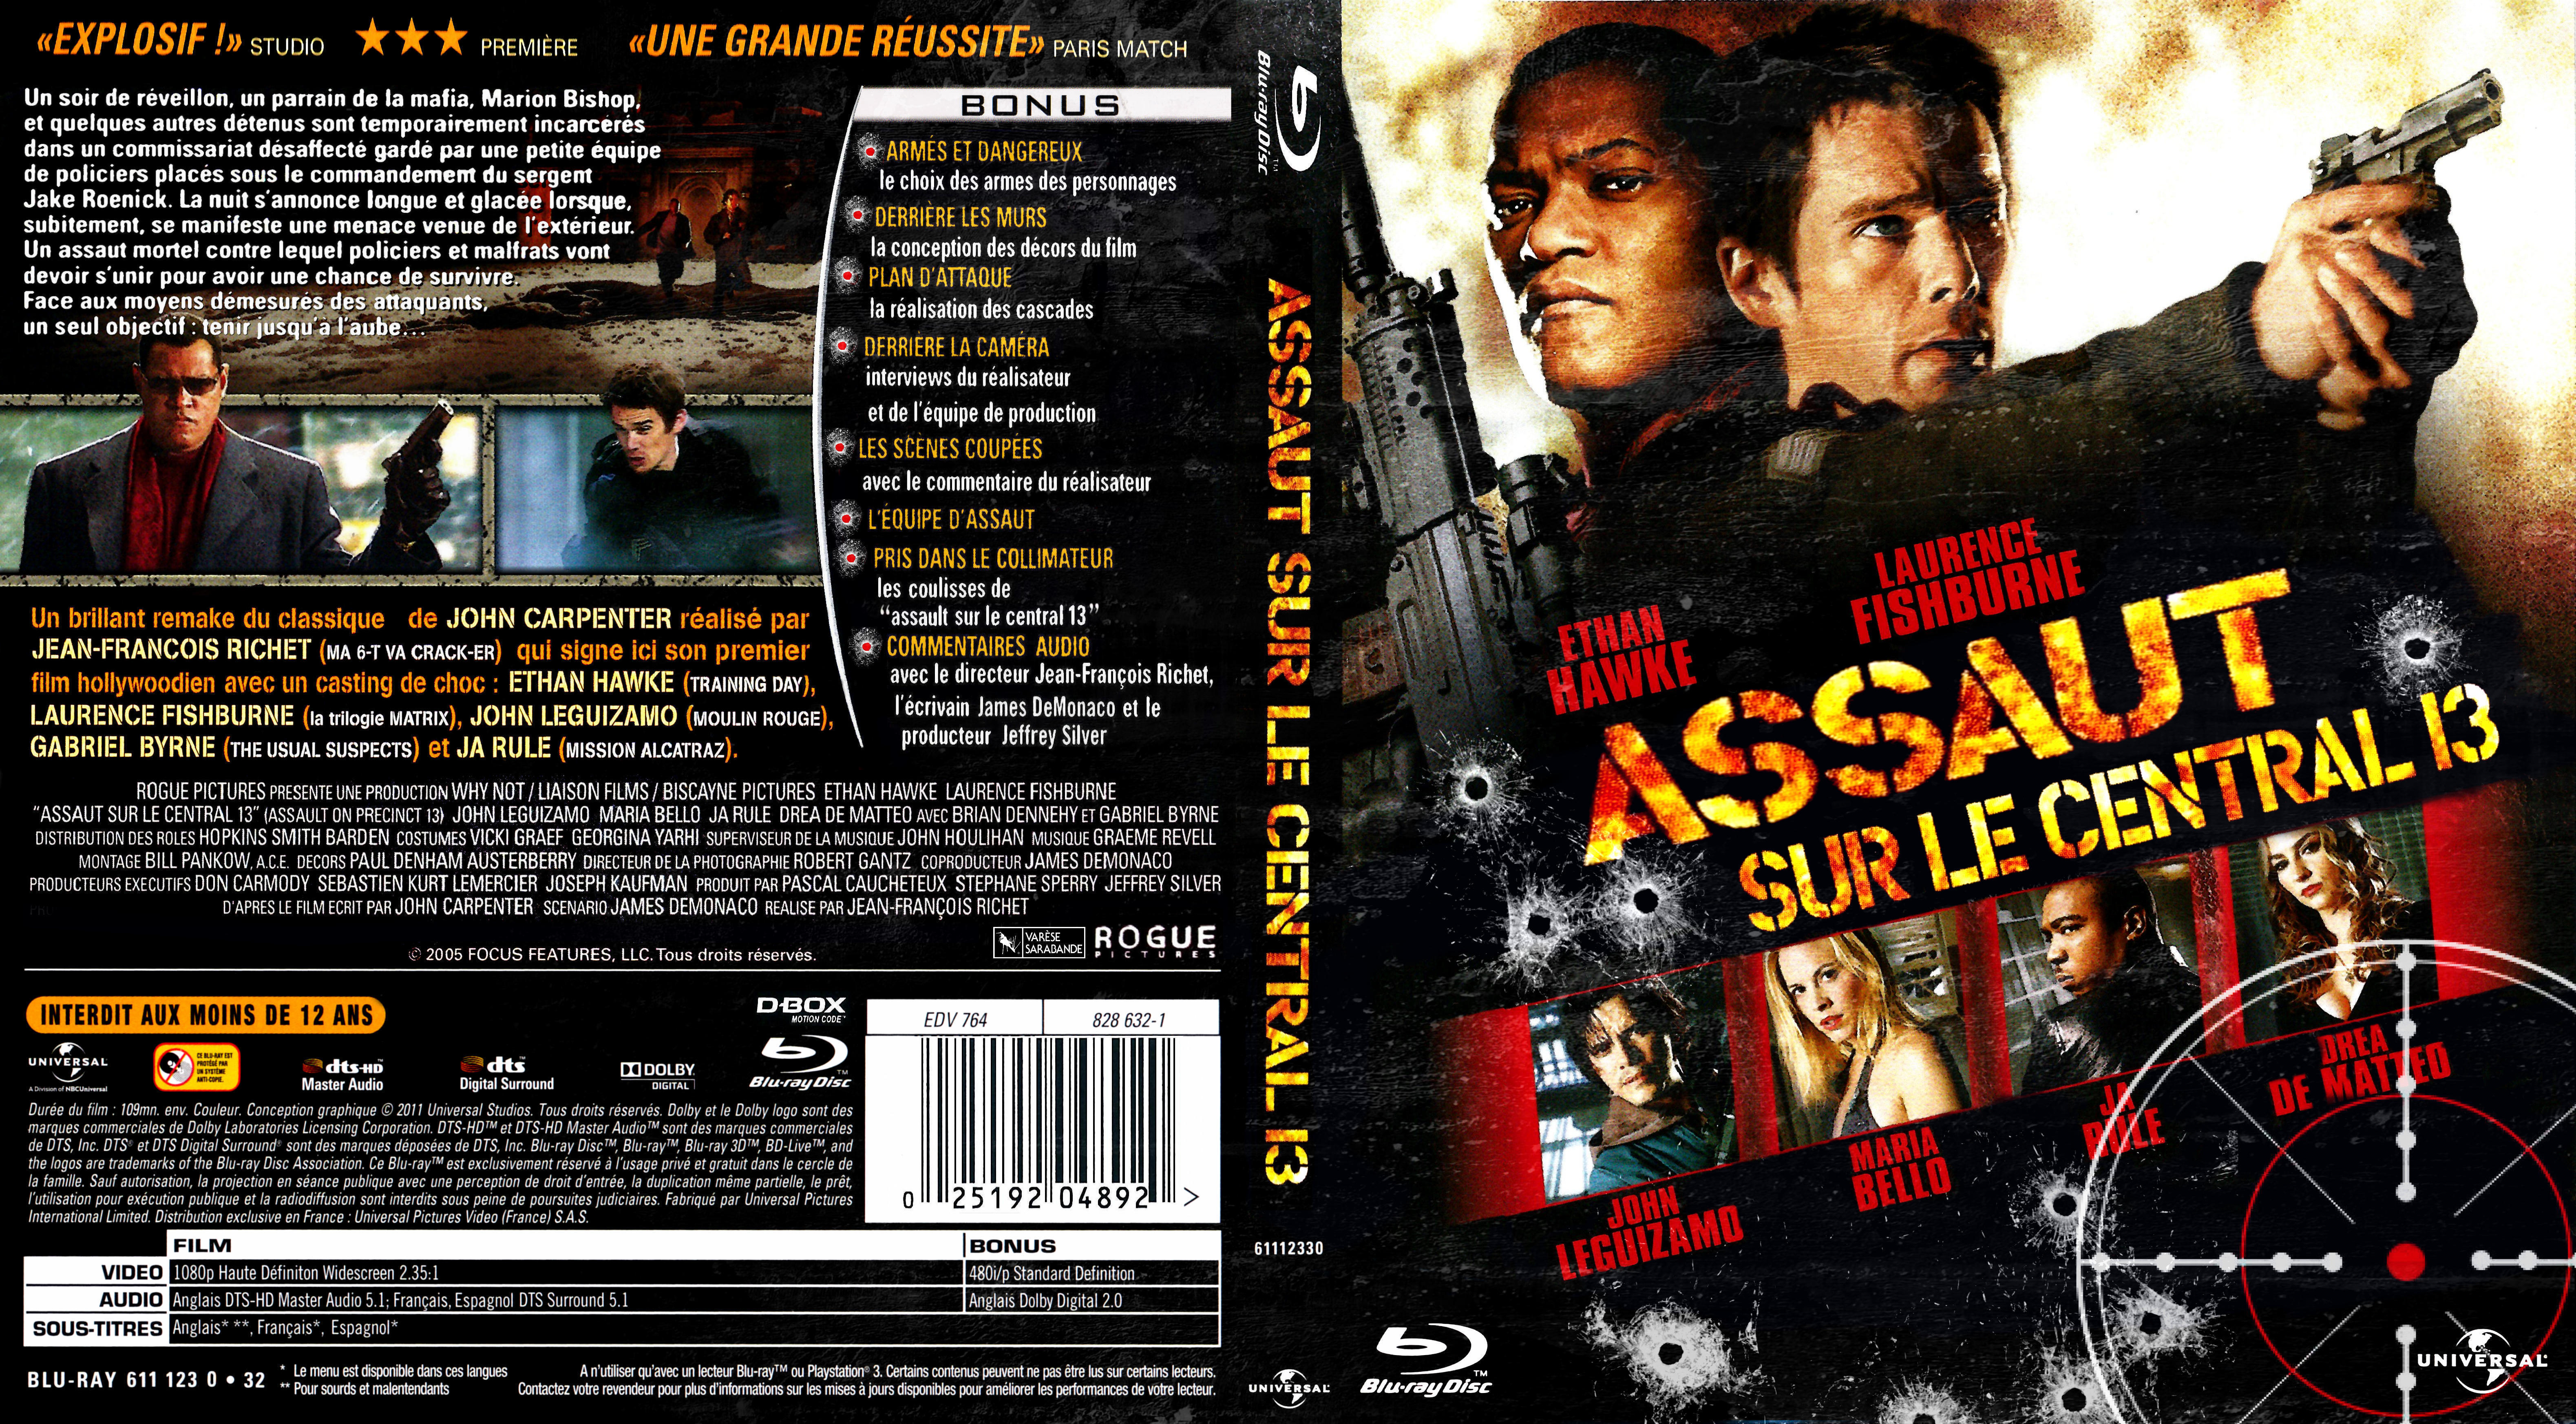 Jaquette DVD Assaut sur le central 13 custom (BLU-RAY)